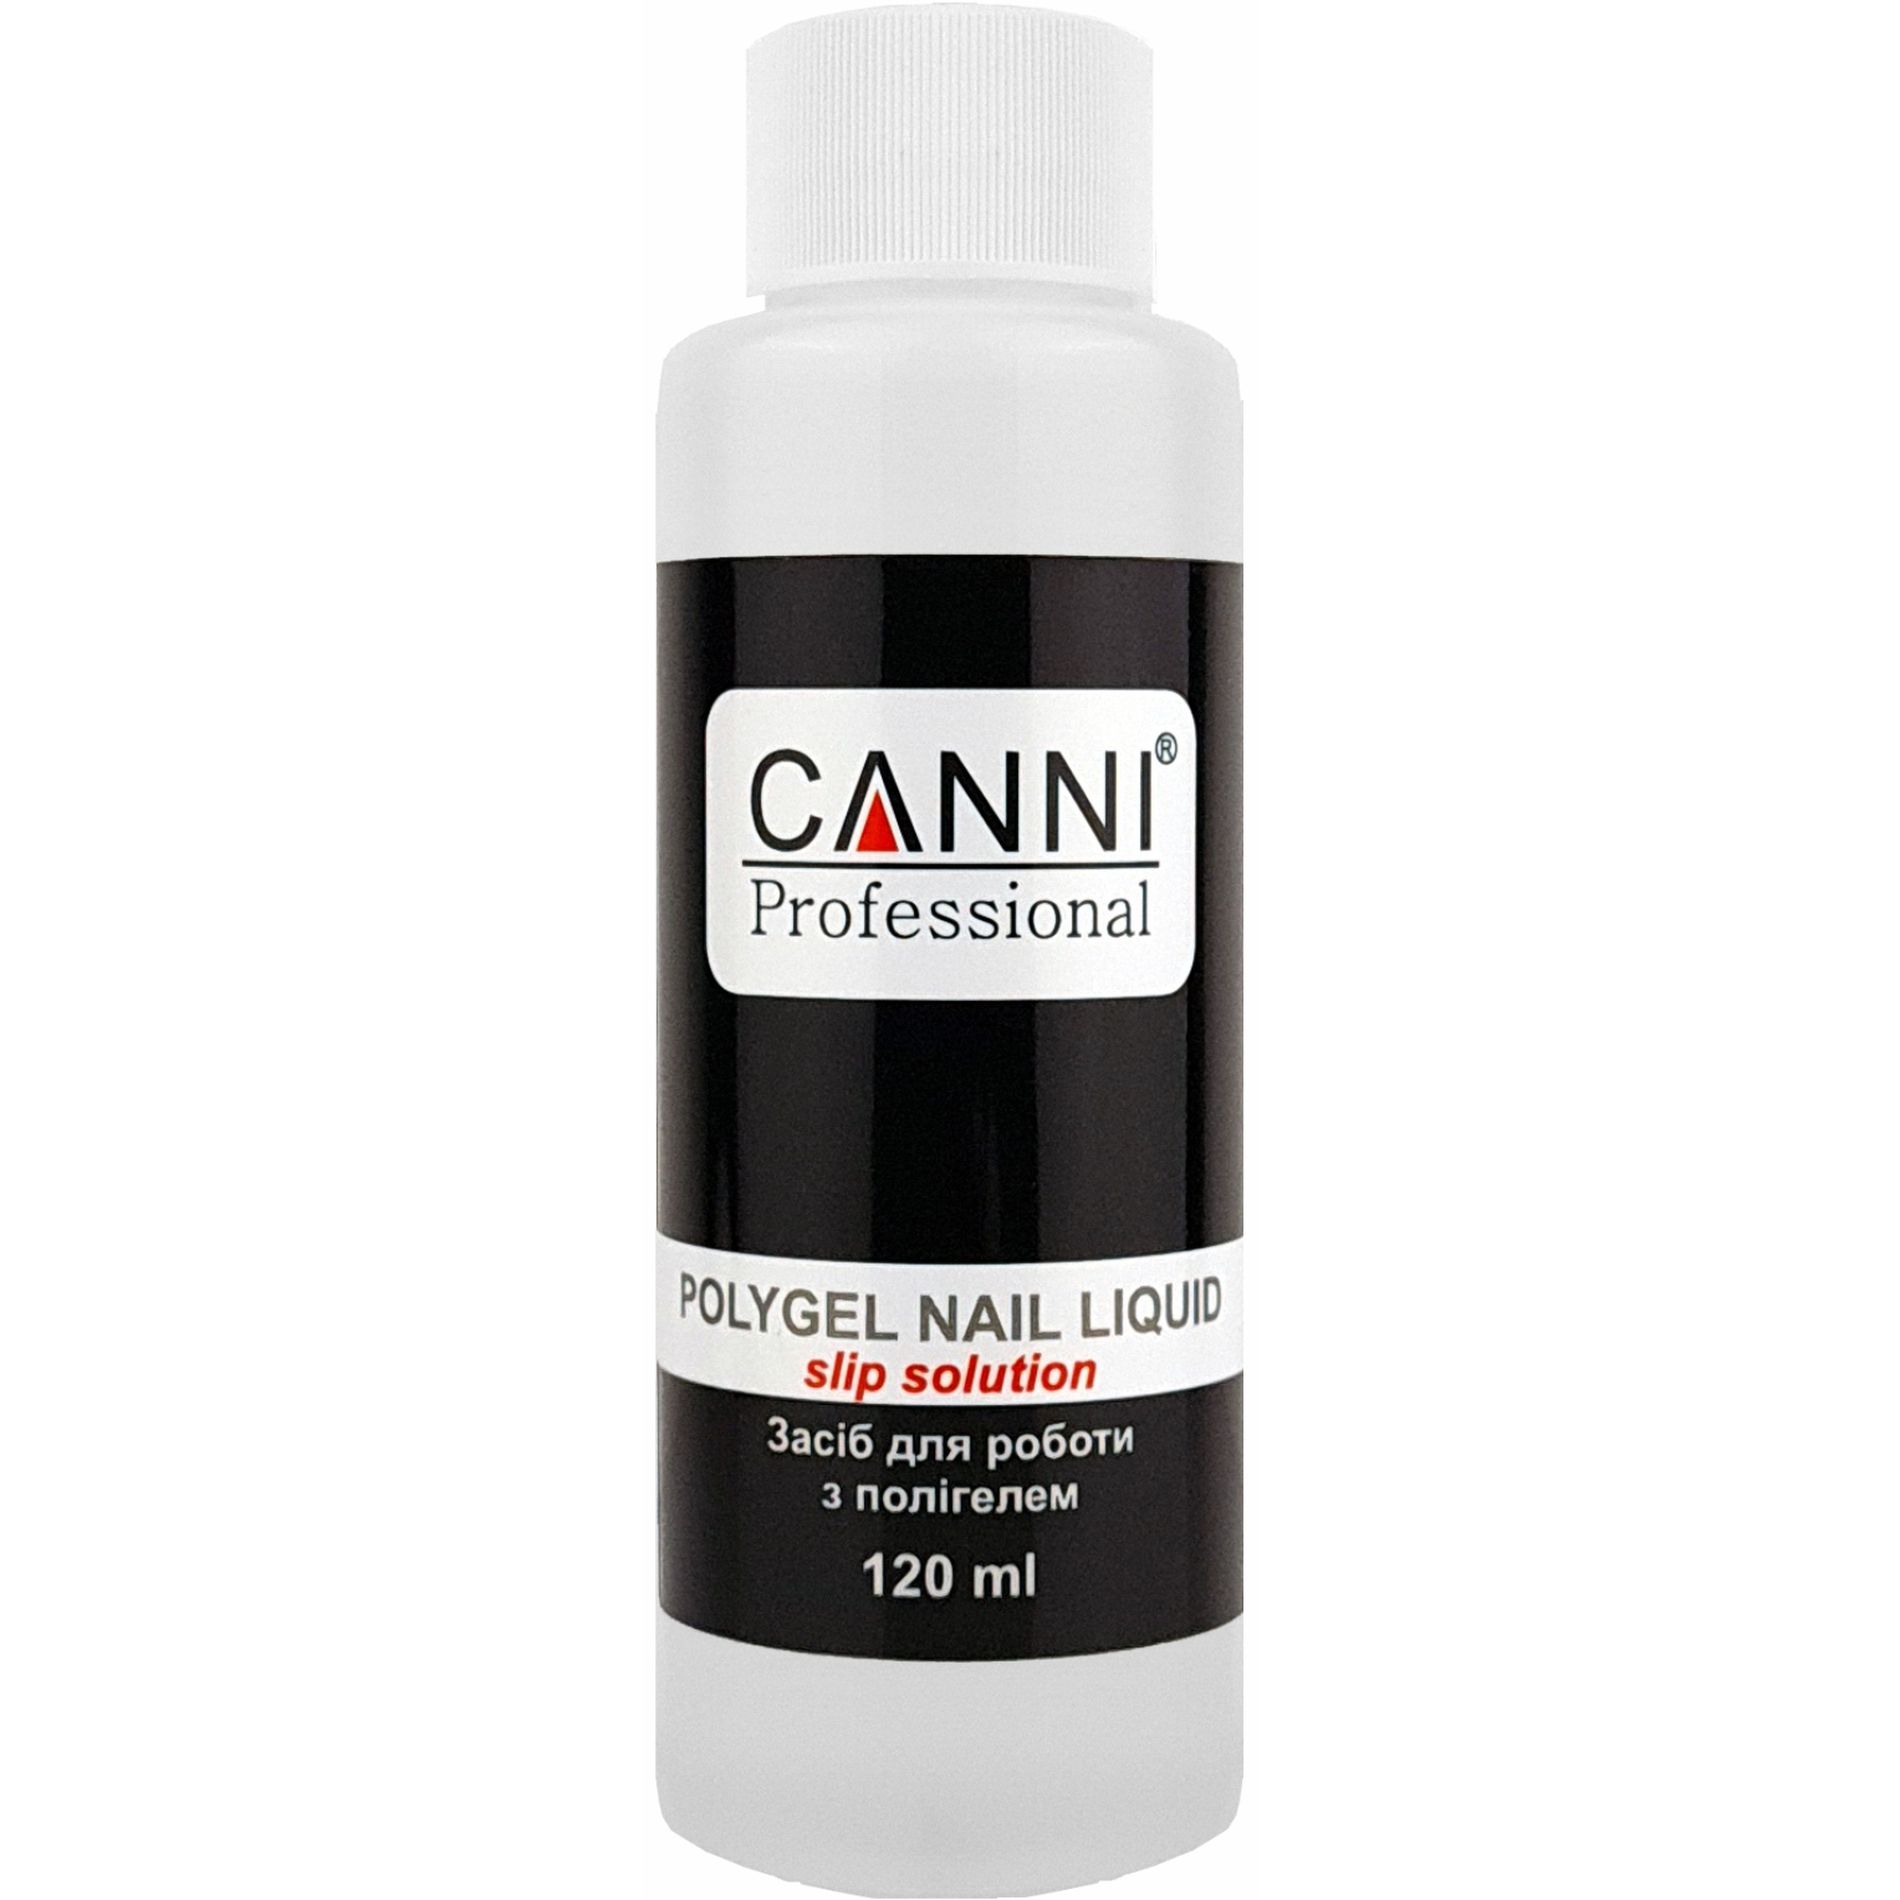 Жидкость для работы с полигелем Canni PolyGel Nail Liquid Slip Solution 120 мл - фото 1